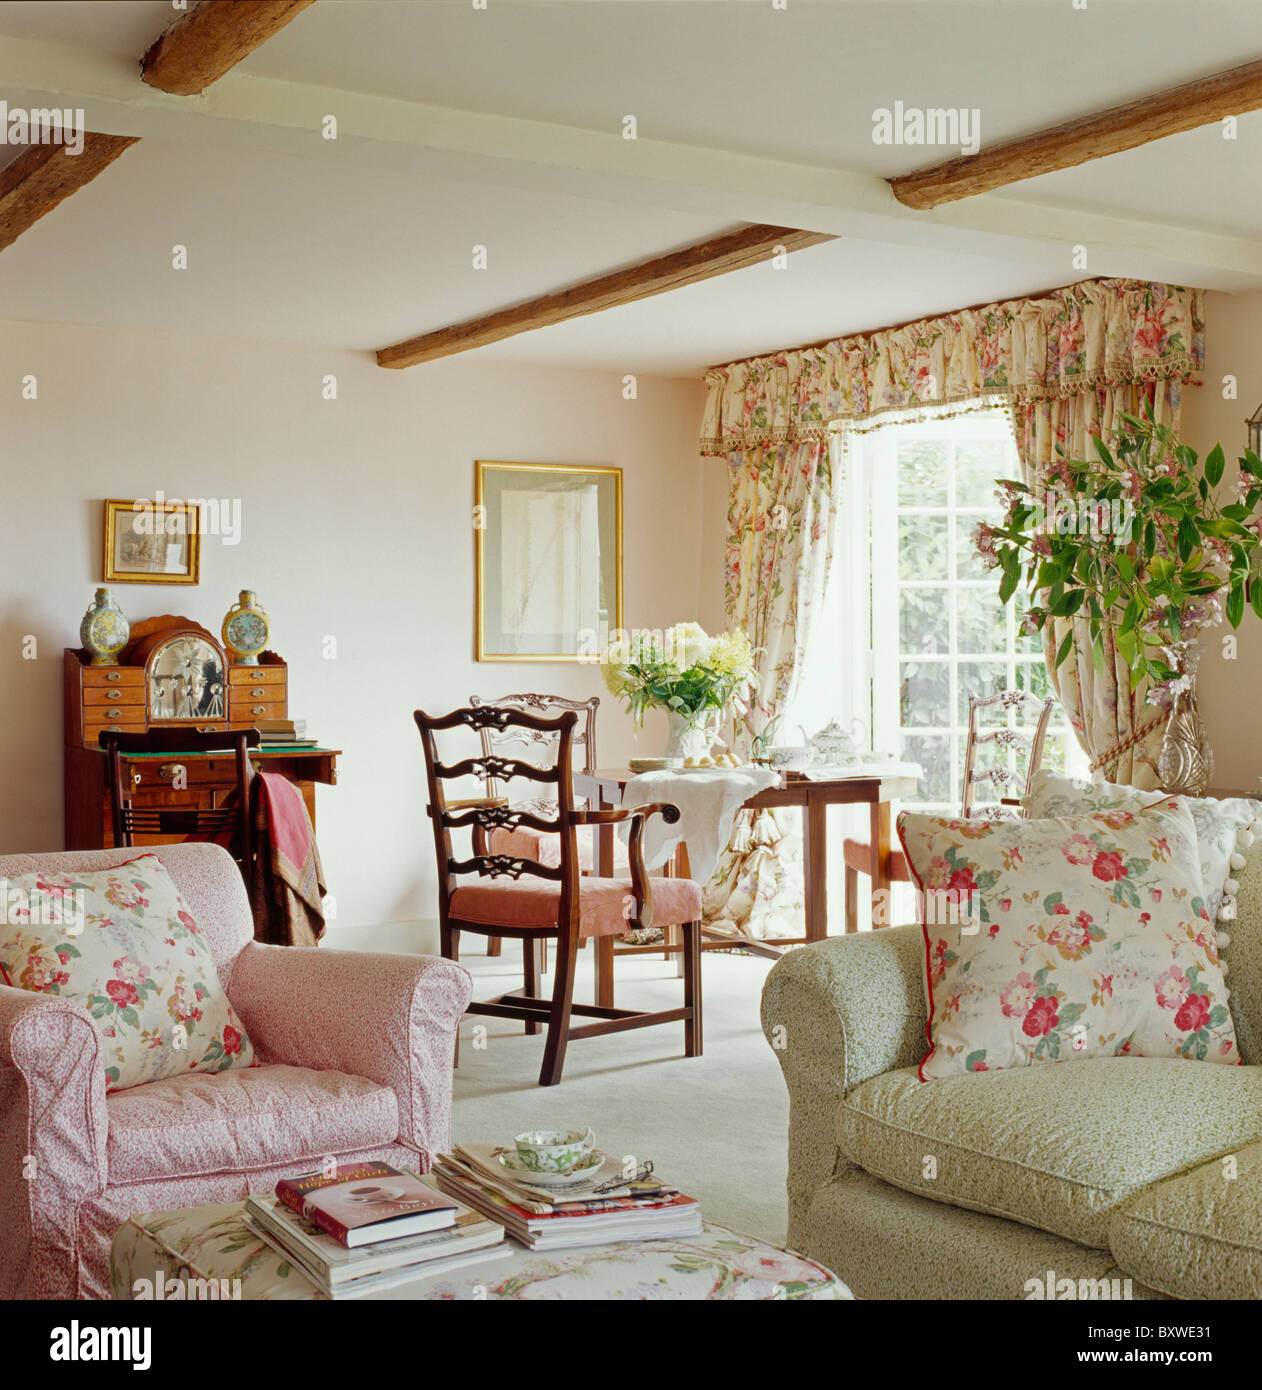 Rosa cuscini floreali sulla poltrona rosa e verde pallido divano in cottage soggiorno con tappeto color crema Foto Stock